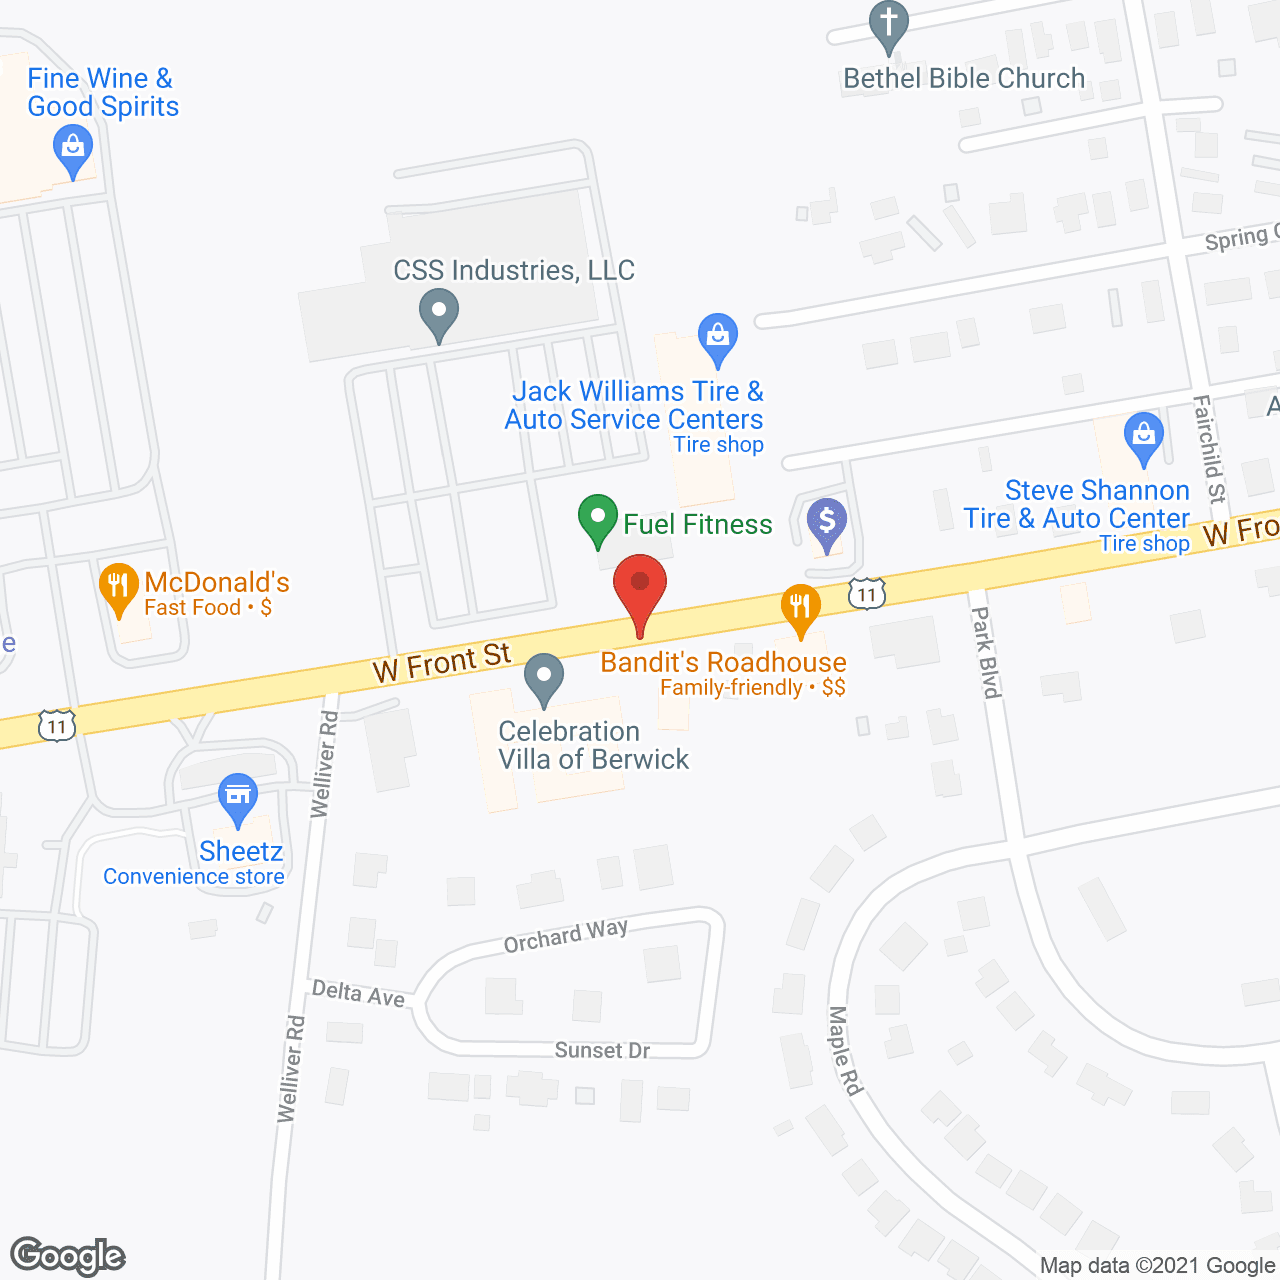 Celebration Villa of Berwick in google map